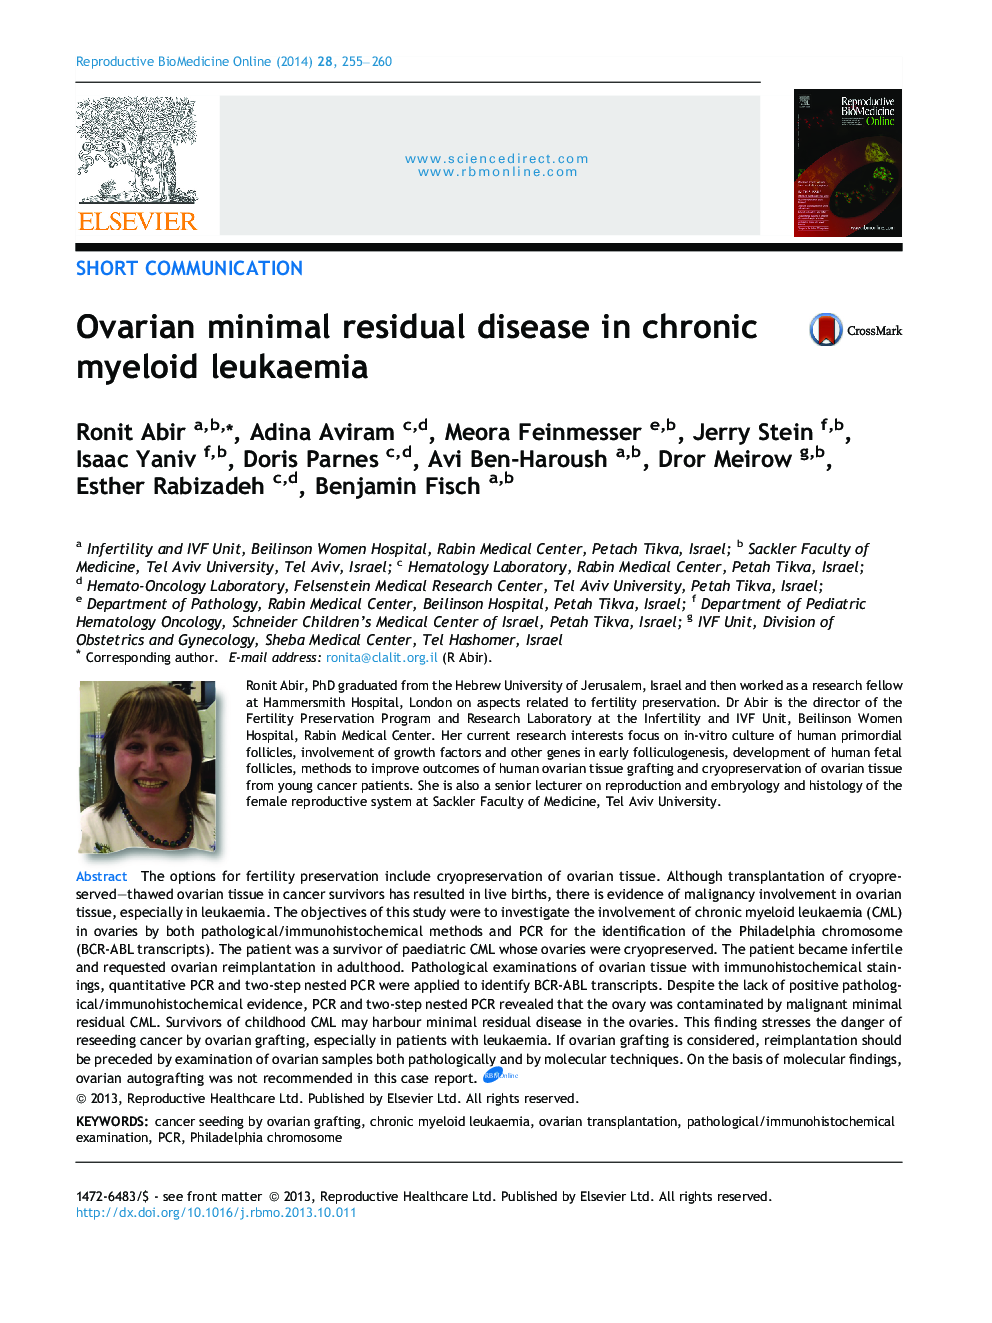 Ovarian minimal residual disease in chronic myeloid leukaemia 